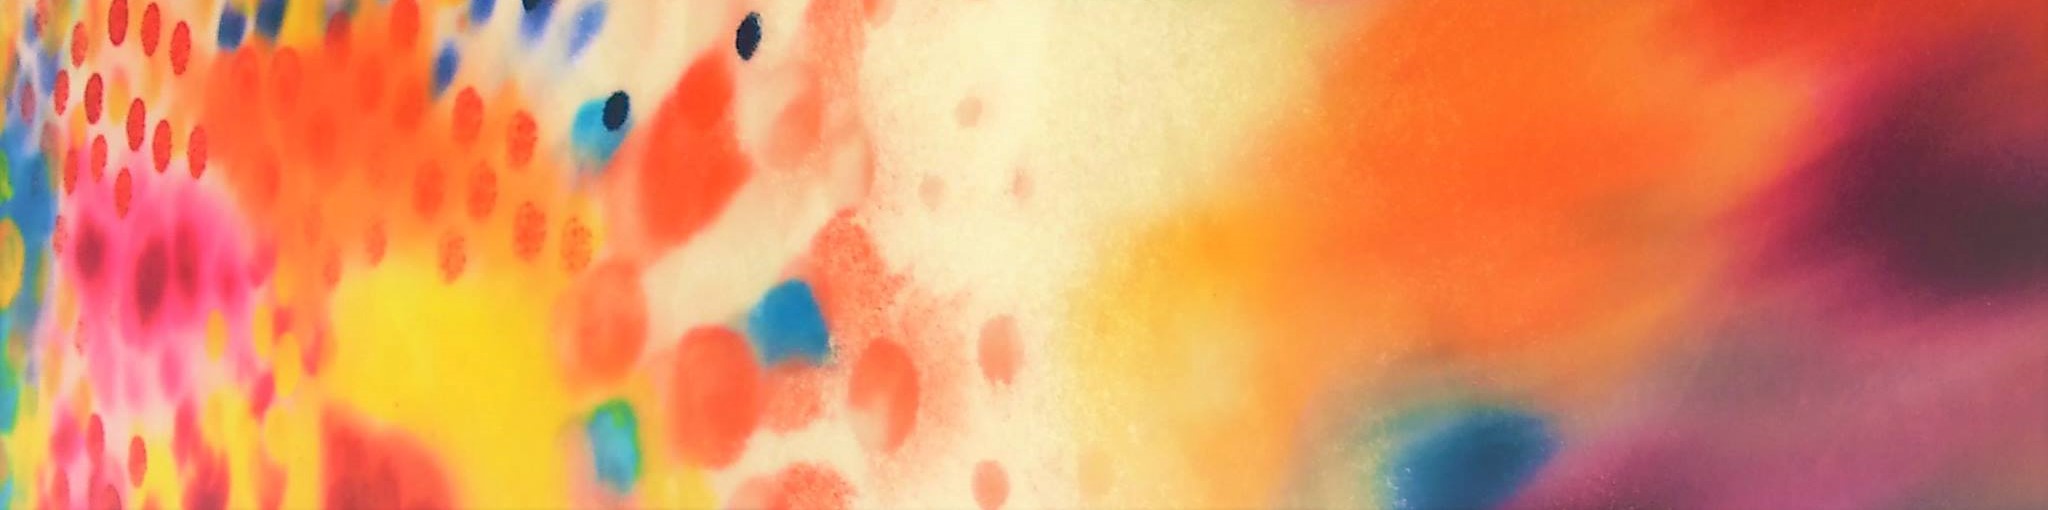 Taidematka Laukon kartanoon Kuvassa värikäs tunnelmaa taidematkalla kuvastava abstrakti maalaus